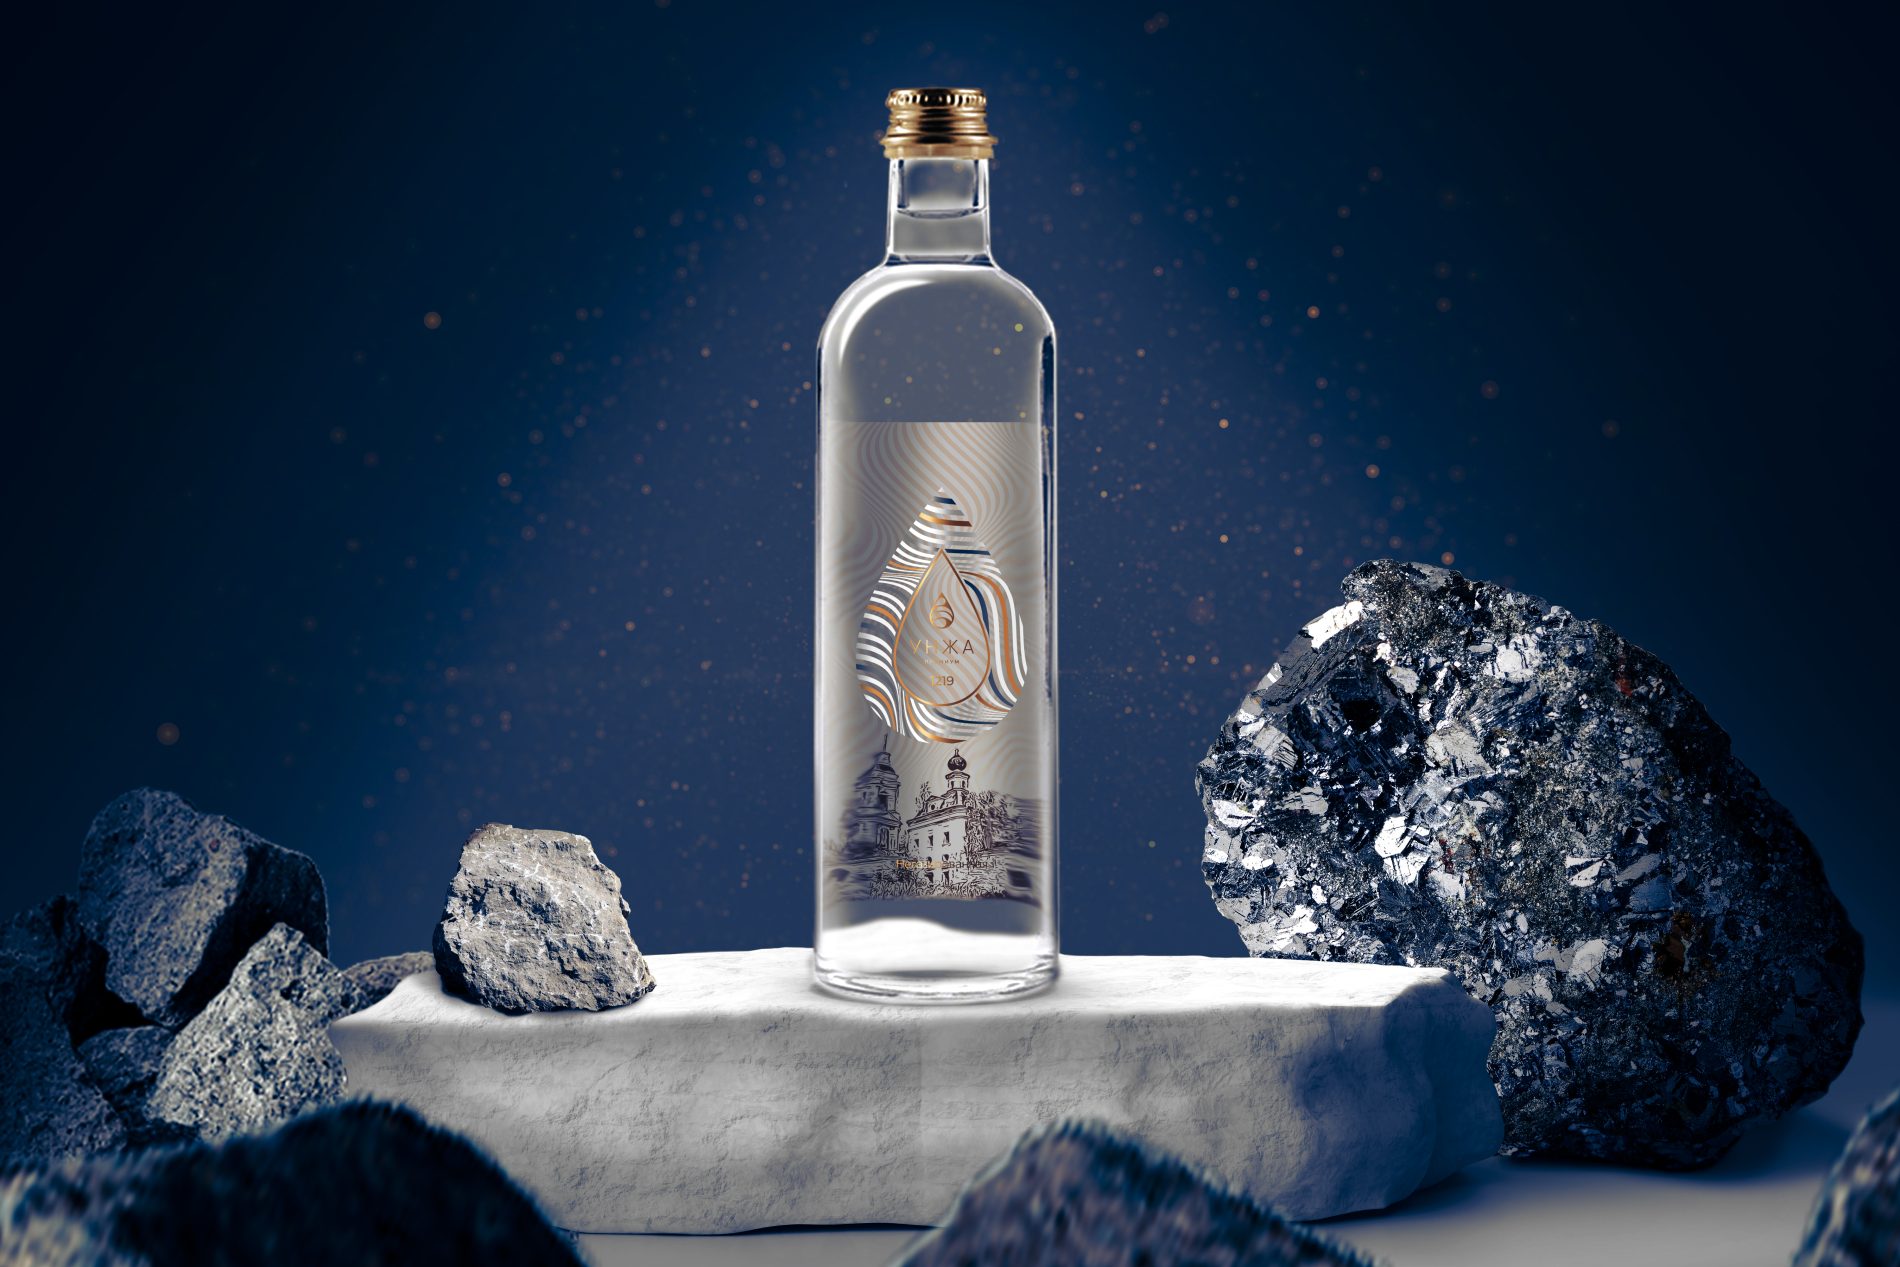 Питьевая вода «Унжа» может стать еще одним прославленным брендом Костромской области